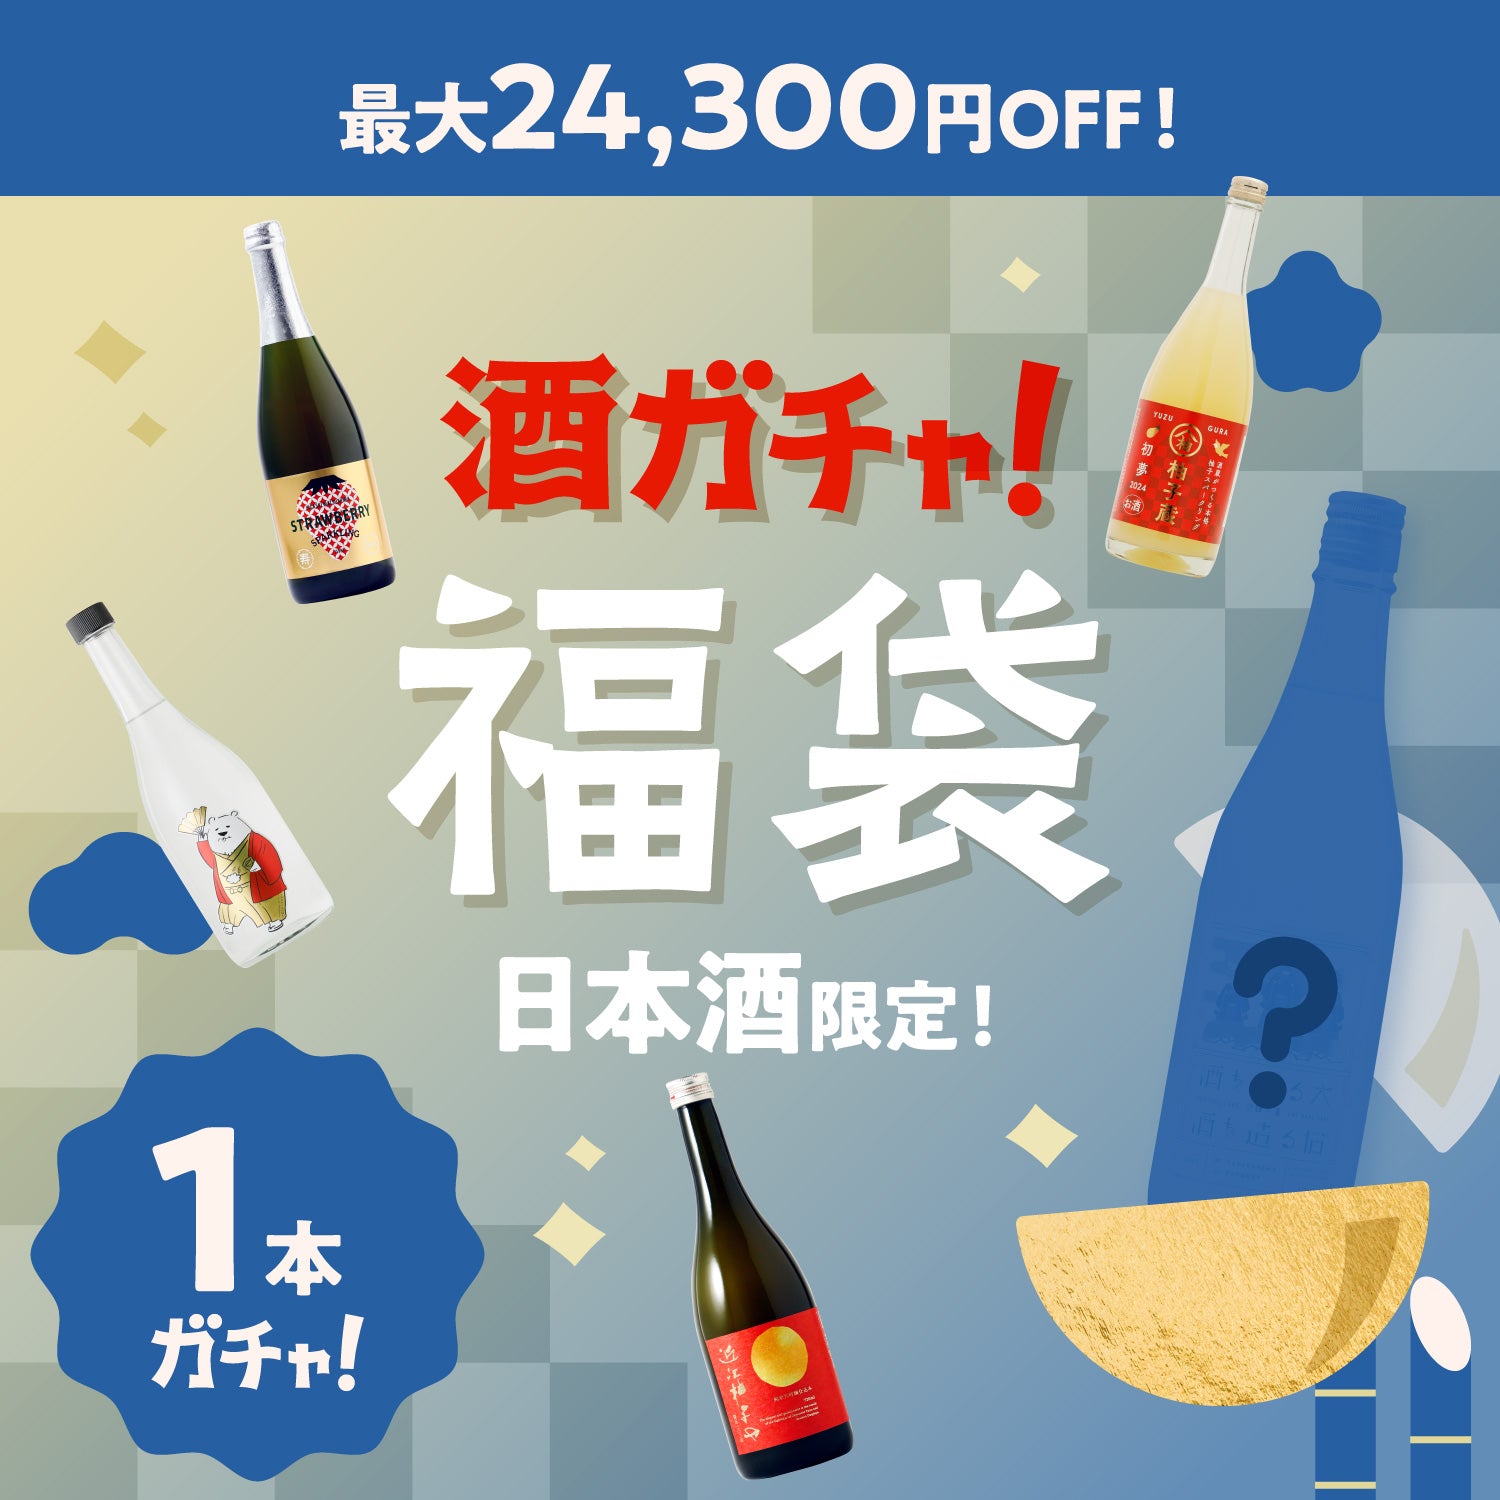 【最大24,300円OFF】プレミアム1本酒ガチャ-日本酒-